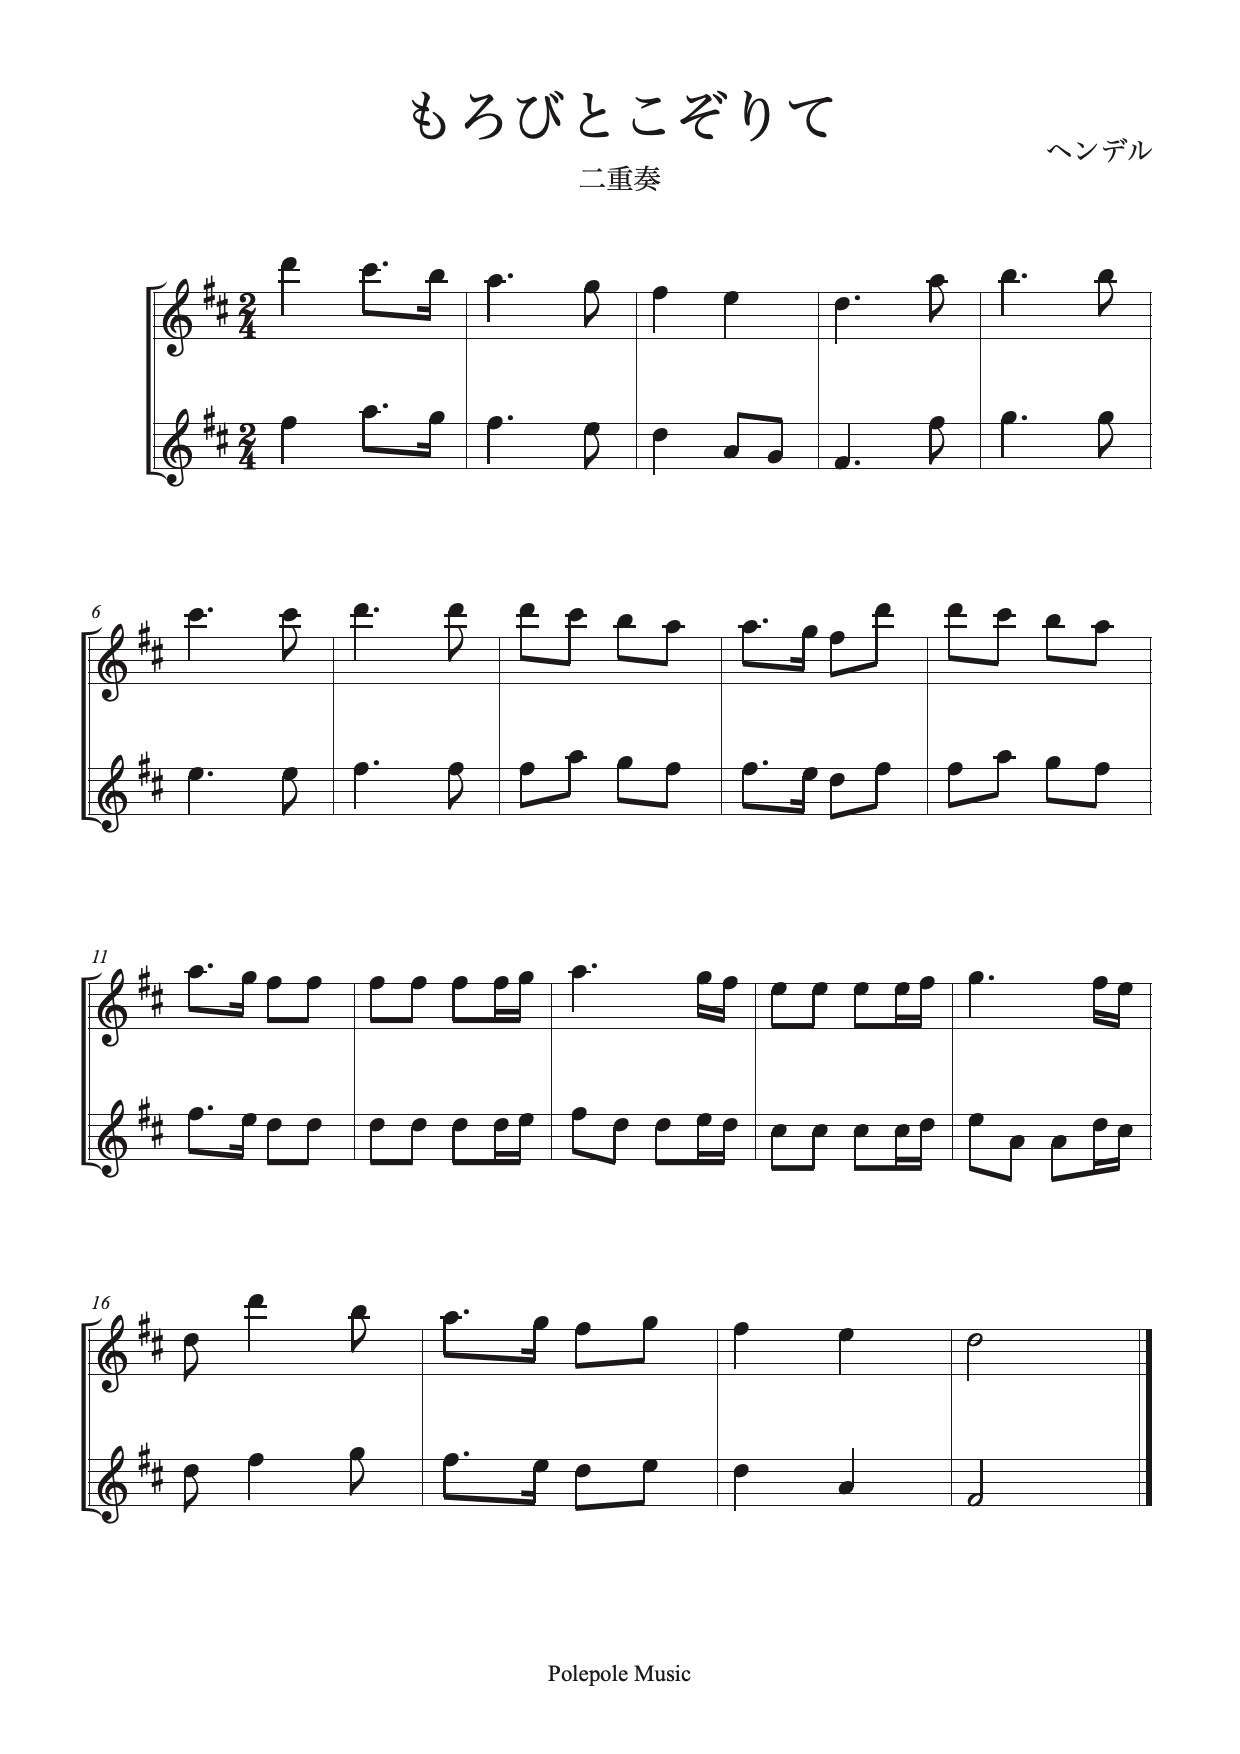 リコーダー アルト 二重奏 もろびとこぞりて Mucome 音楽 楽譜の投稿ダウンロードサイト